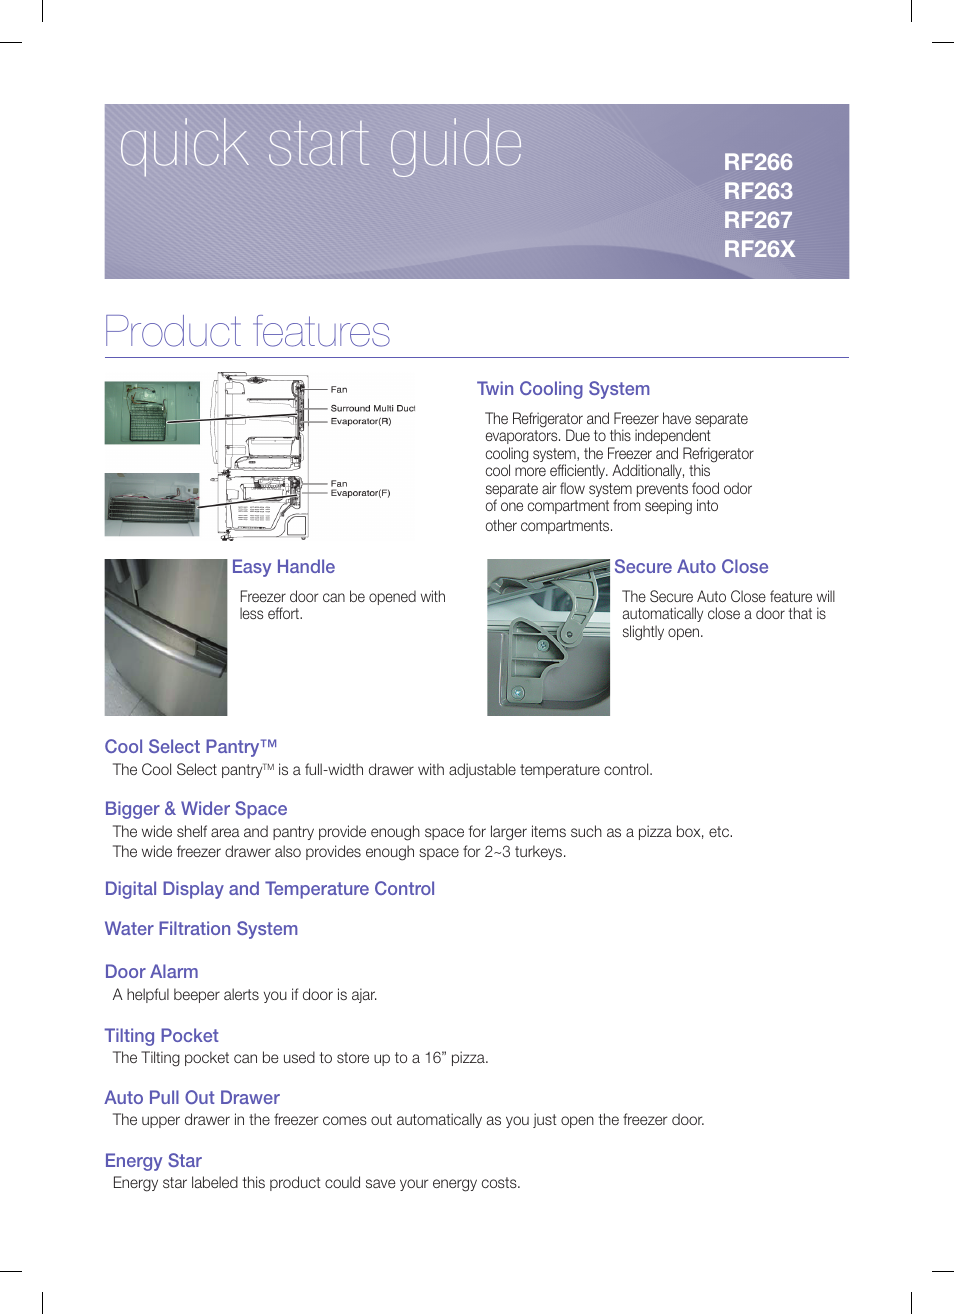 Samsung RF26XAEBP-XAA User Manual | 9 pages | Also for: RF26XAERS-XAA